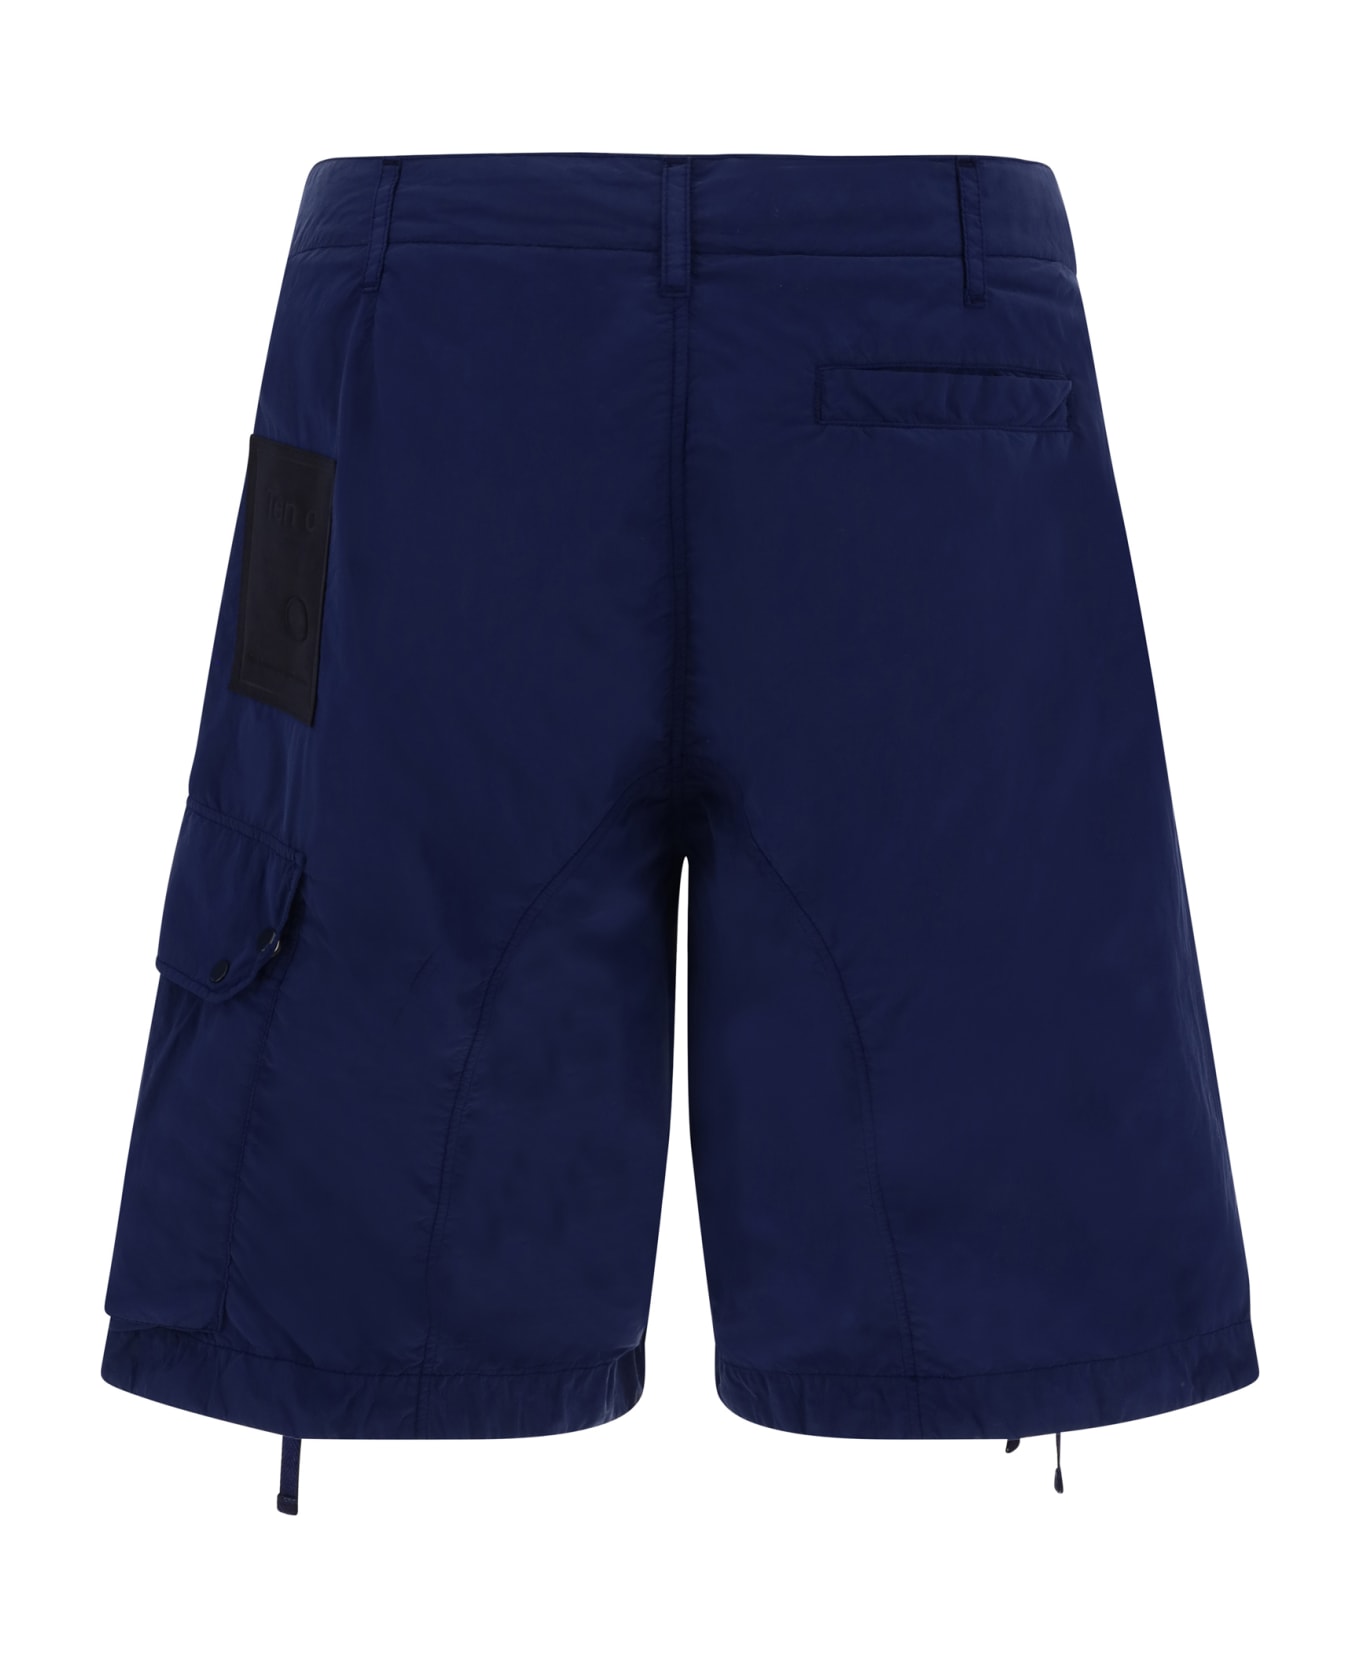 Ten C Shorts - Blu Notte